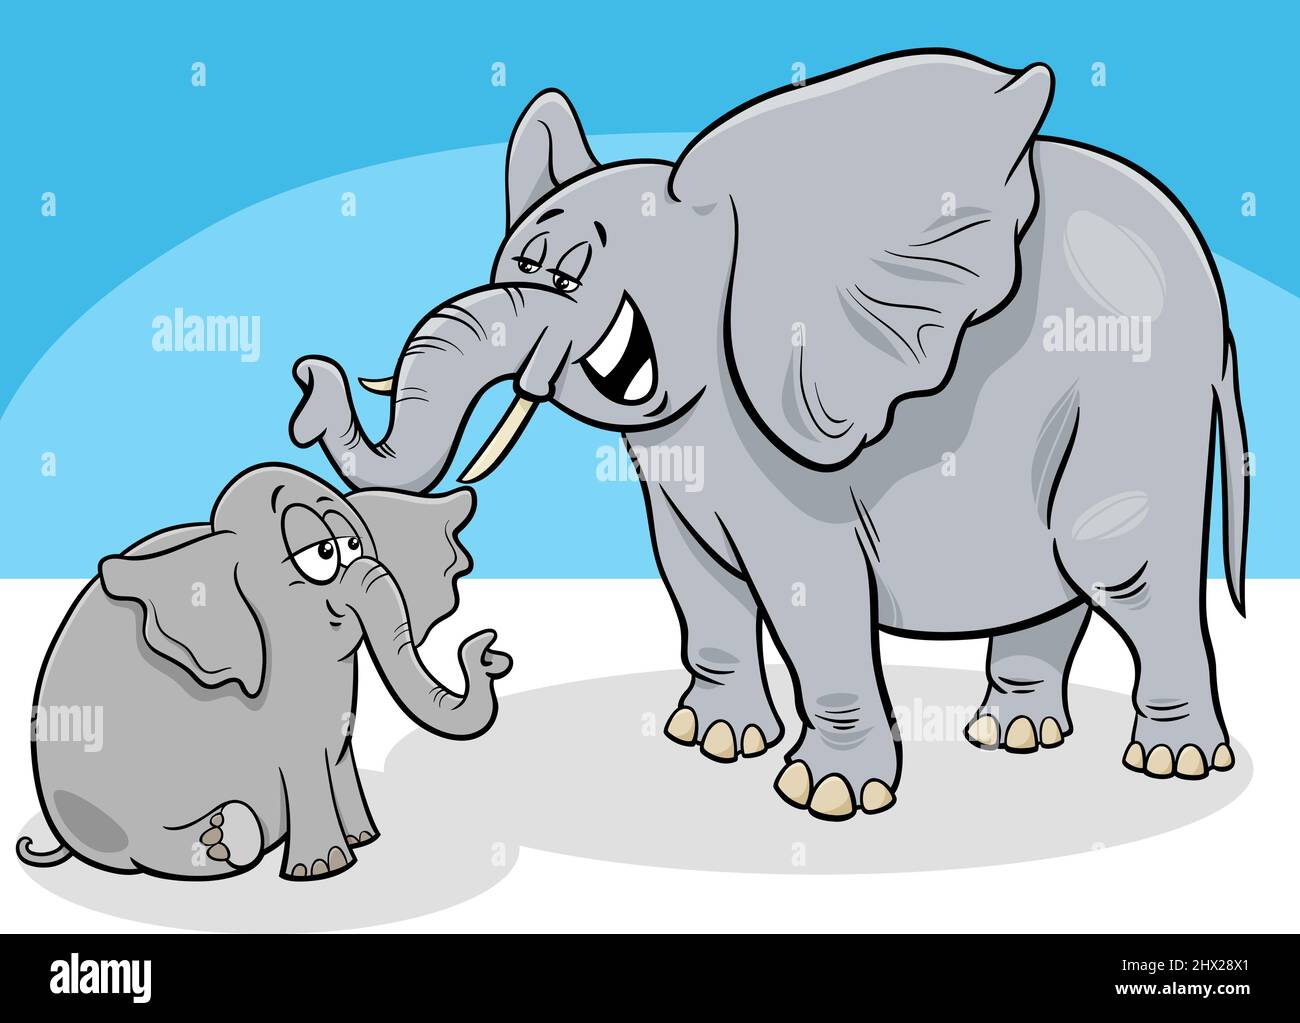 Mamá Elefante - Amamos está caricatura! ya la vieron?